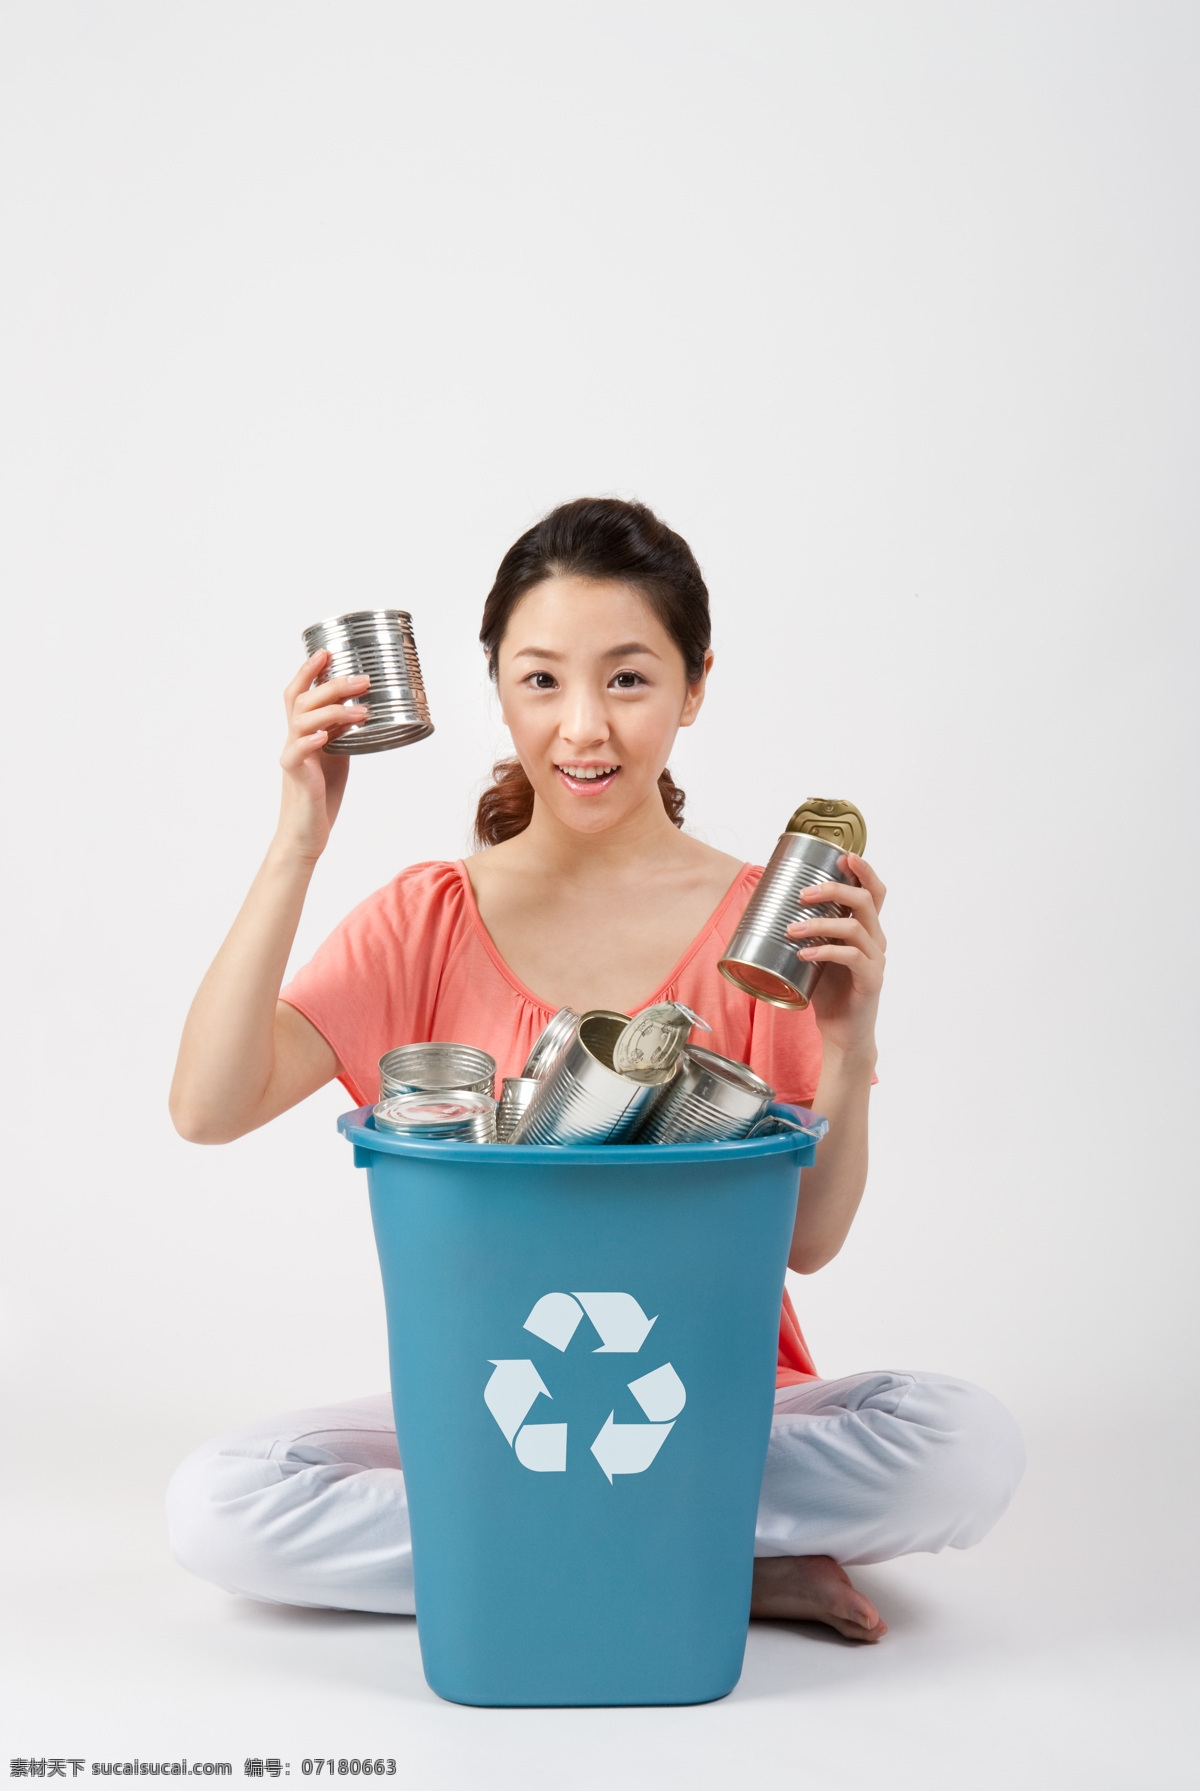 回收 垃圾 志愿者 美女图片 环保 环境保护 保护地球 绿色环保 美女 微笑 垃圾桶 环保标志 罐子 循环标 环保宣传 创意 抽象 特写 高清图片 人物图片